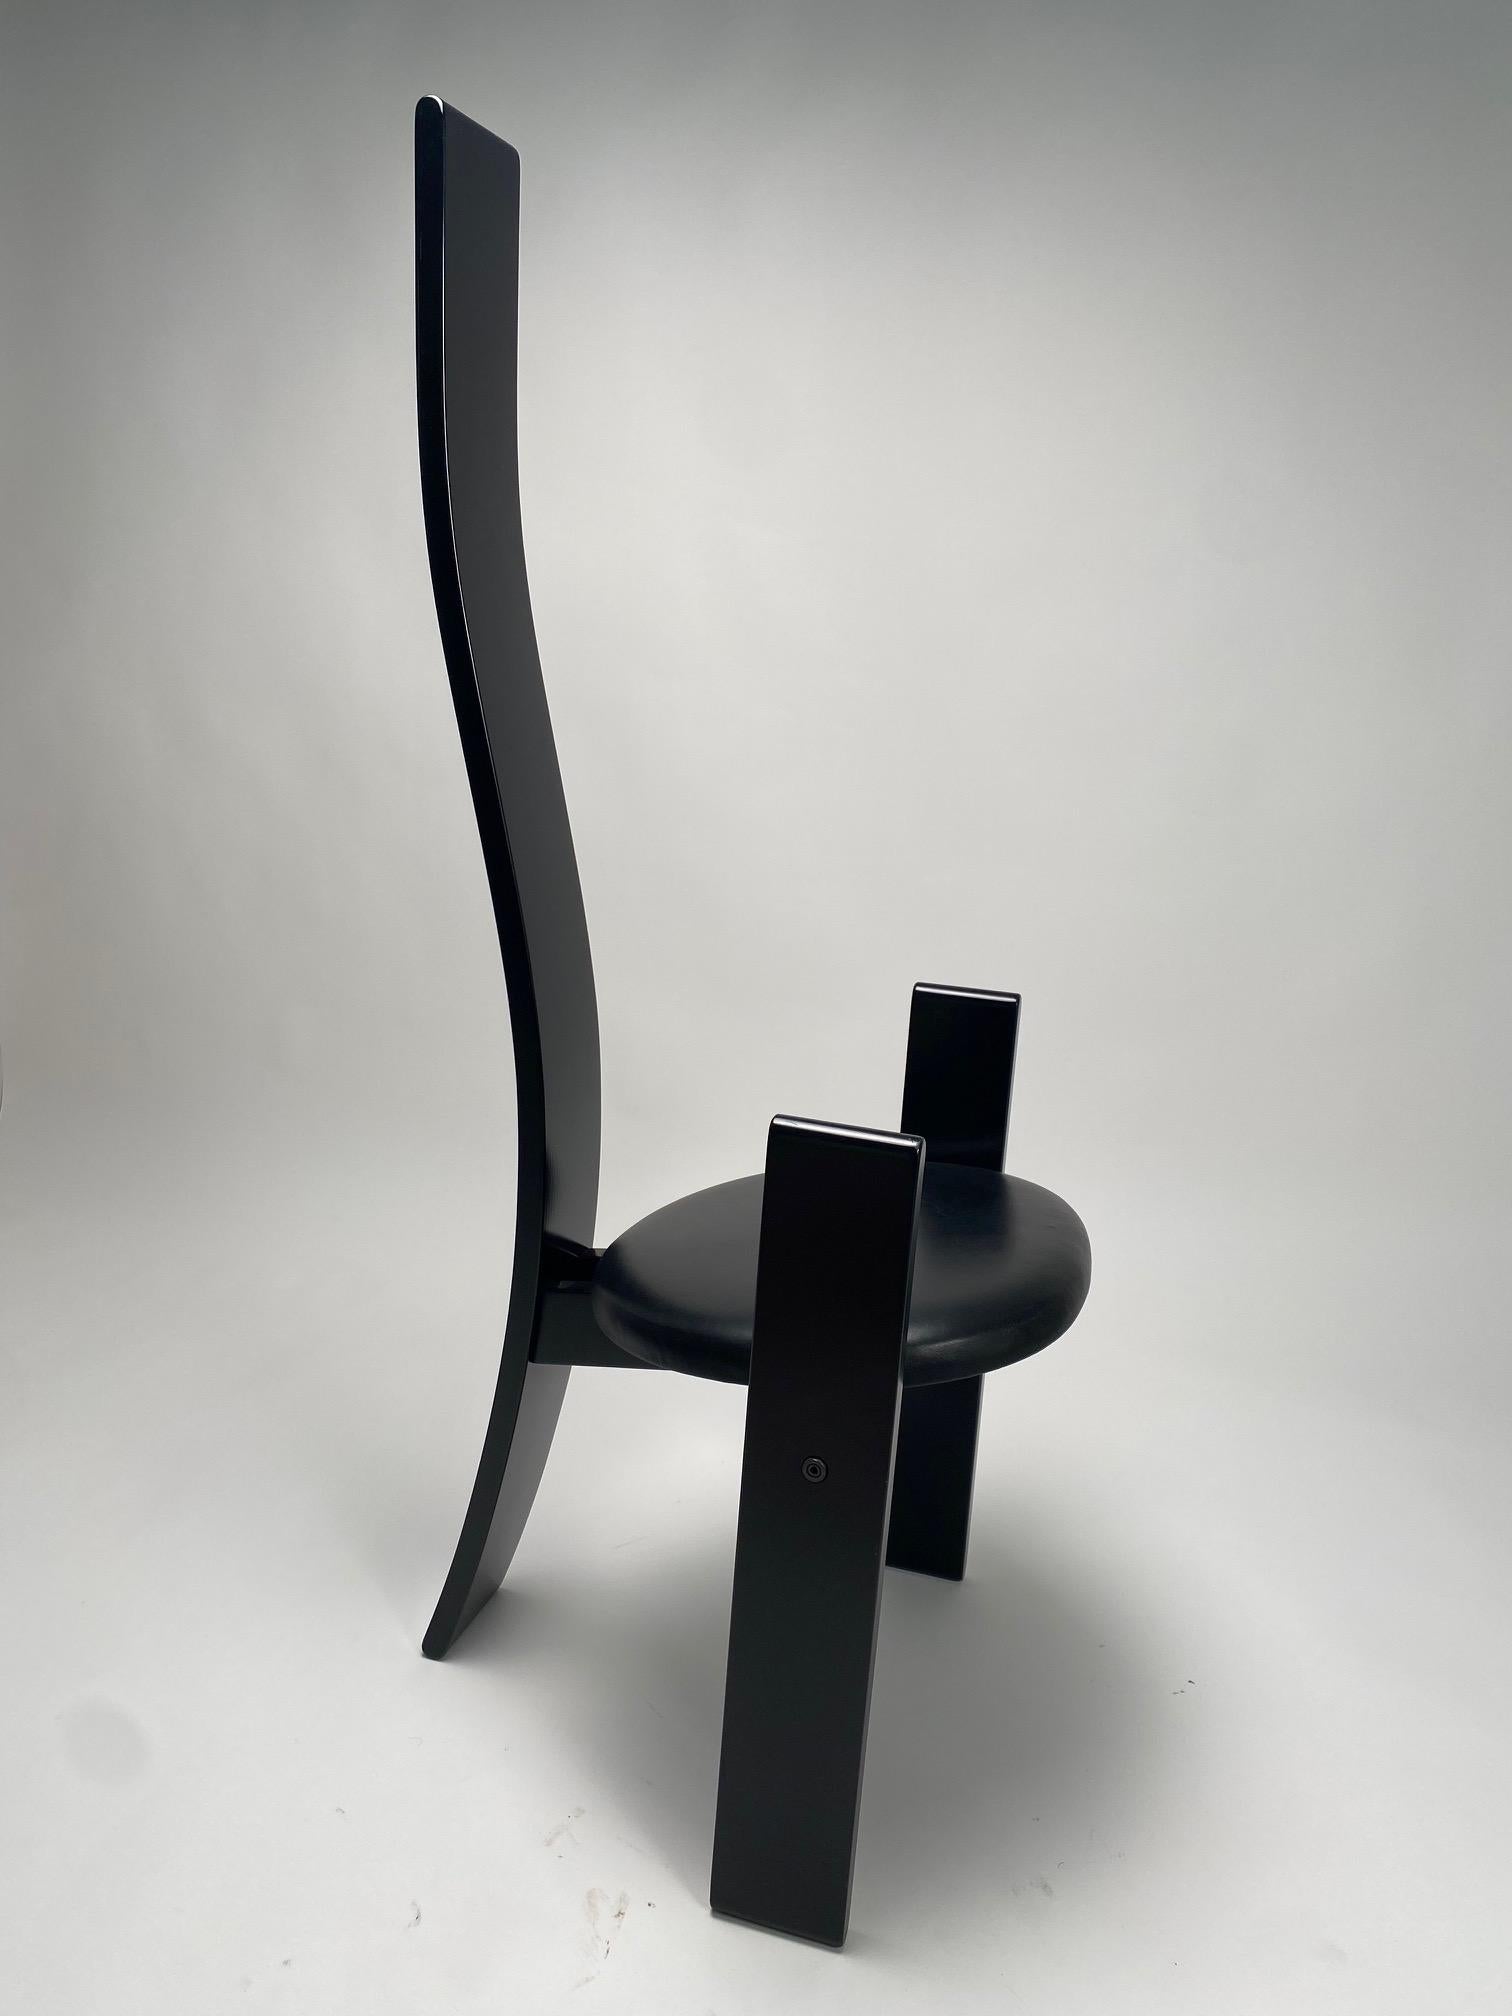 La chaise Golem, dotée d'un haut dossier en bois laqué, est née, comme l'affirme Magistretti, de la volonté de rendre hommage au designer Mackintosh, après avoir visité une exposition sur l'œuvre de l'architecte écossais. L'élément qui fait office